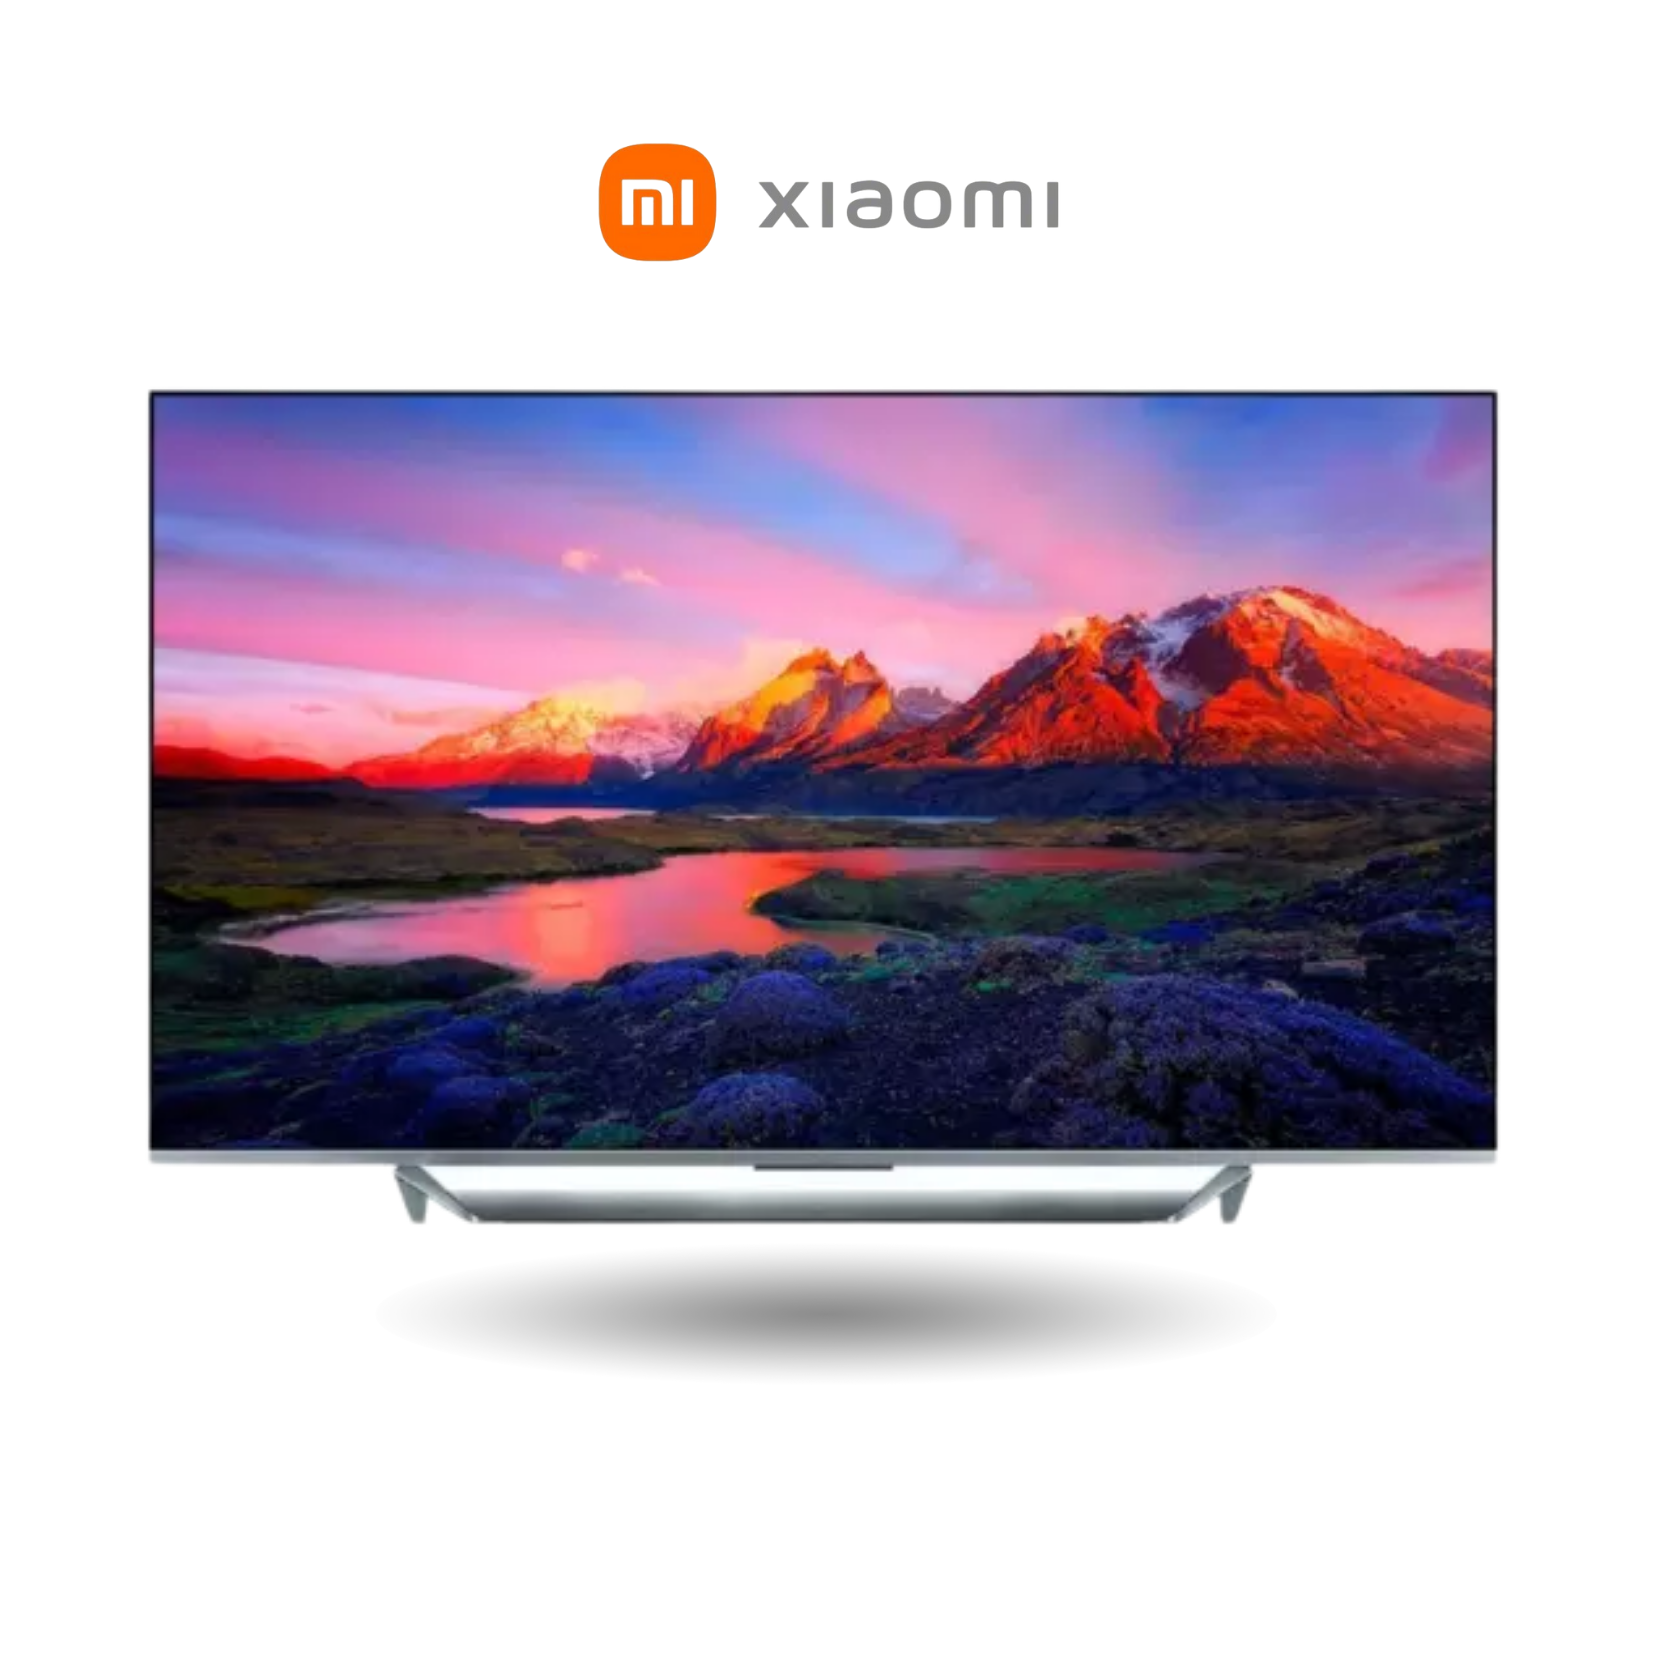 Xiaomi Mi TV Q1 Product Image 1